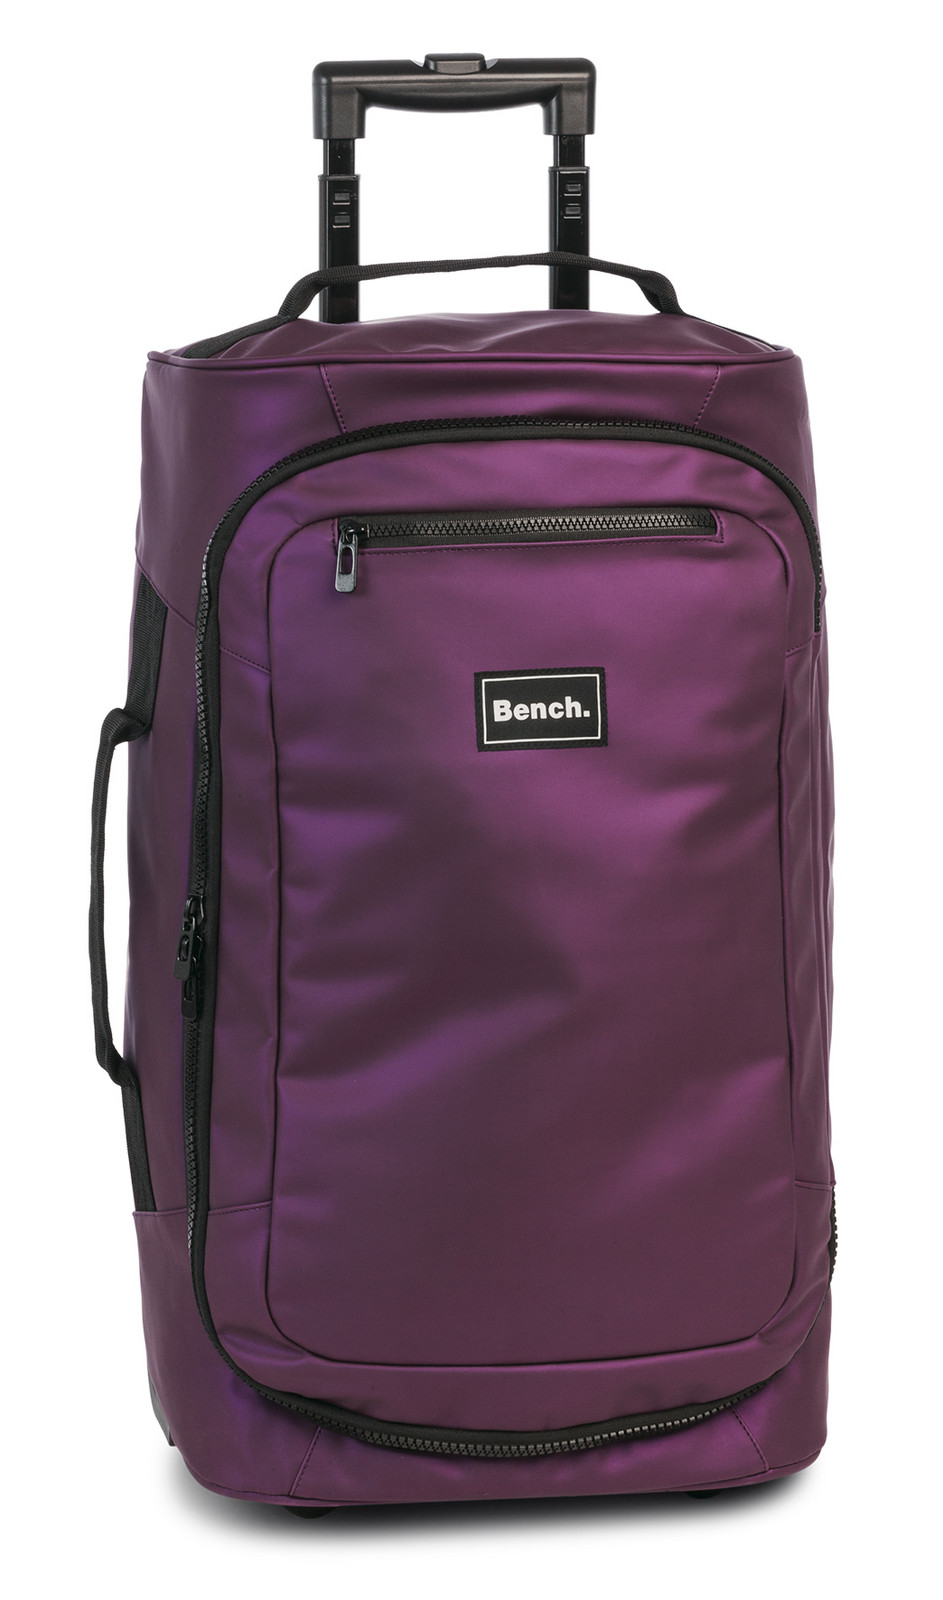 Bench. Bench Hydro cestovní taška na kolečkách 36L - blackberry